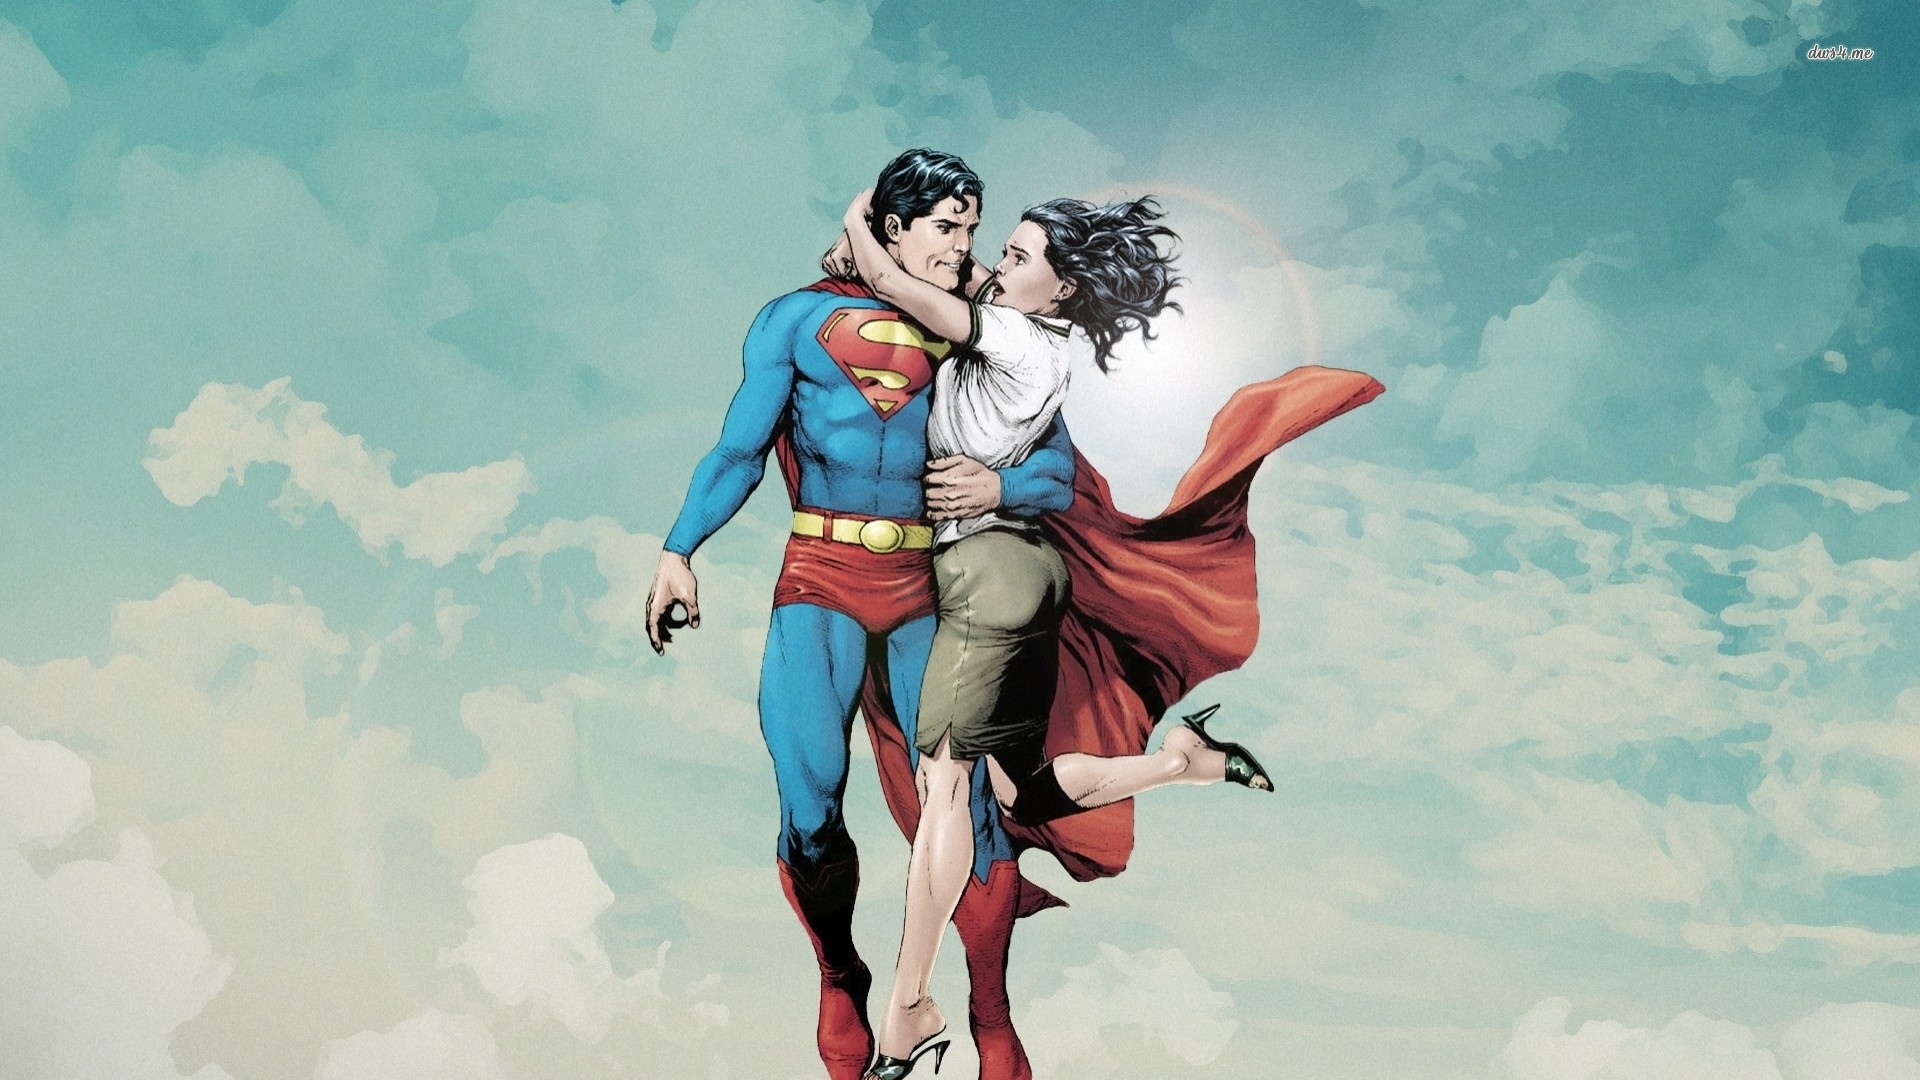 1920x1080 6086-superman--cartoon-wallpaper.jpg (1920Ã1080) | superman |  Pinterest | Cartoon wallpaper, Wallpaper and Cartoon